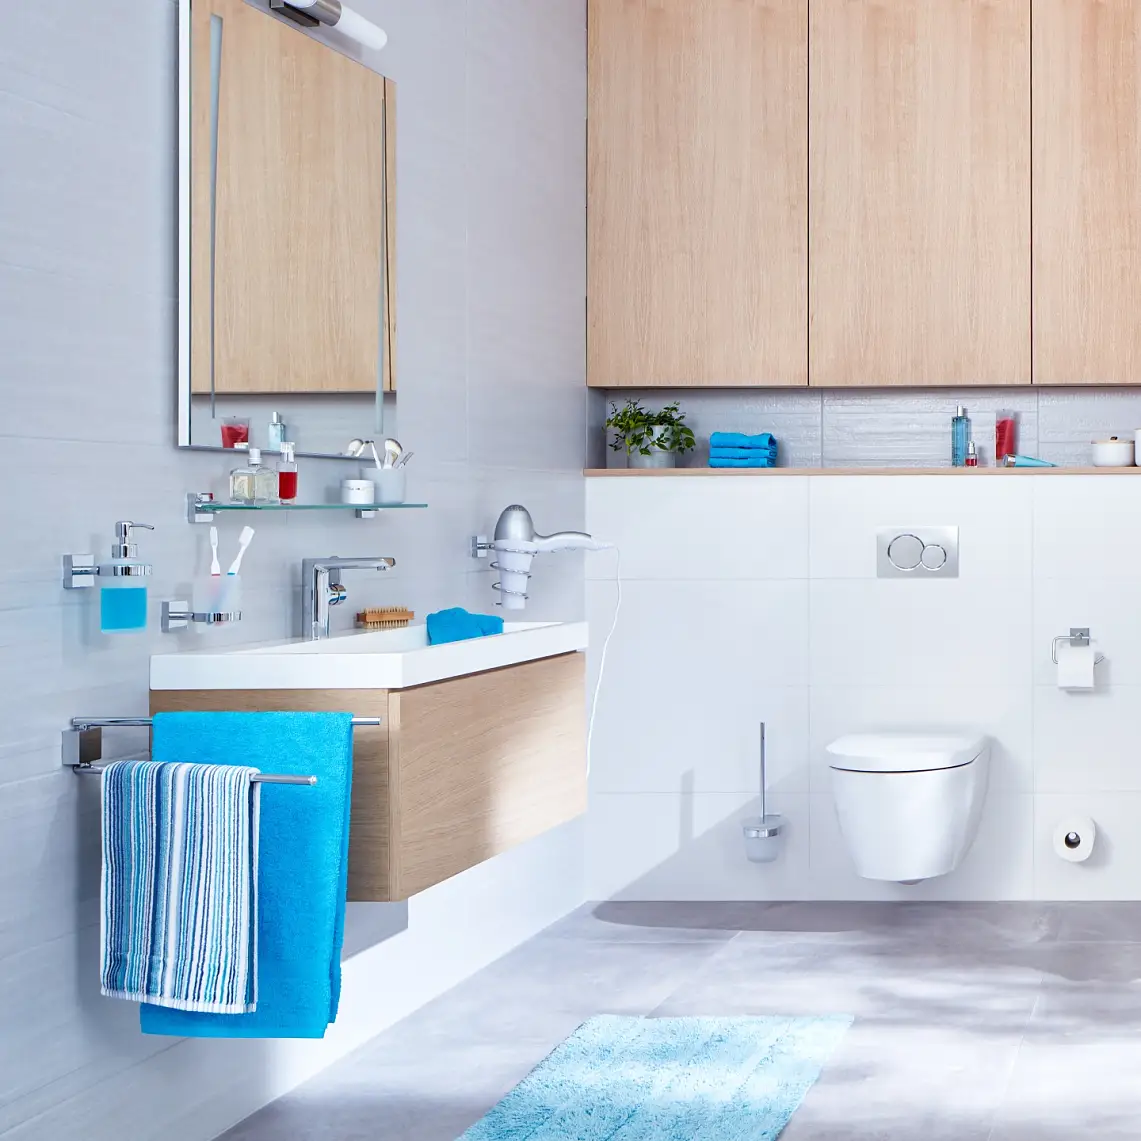 Design limpo e estruturas de linhas direitas para uma experiência de casa de banho organizada.